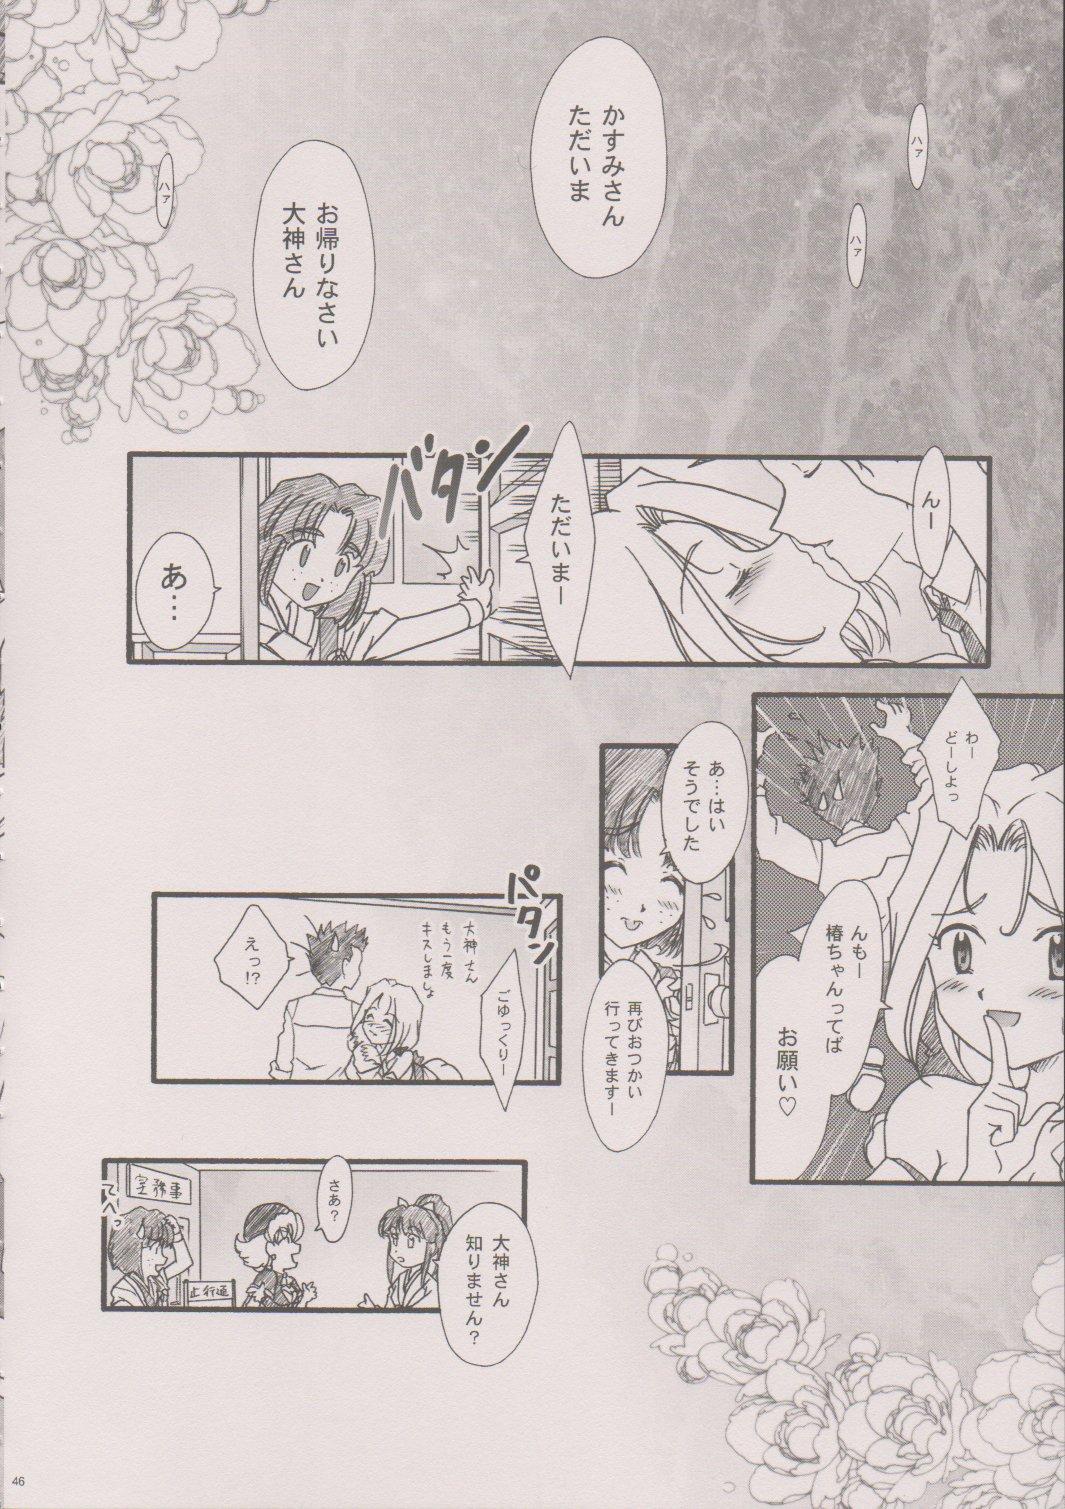 [TSK (Fuuga Utsura)] Maihime ~Karen~ 6 Teito Yori. (Sakura Wars) 44